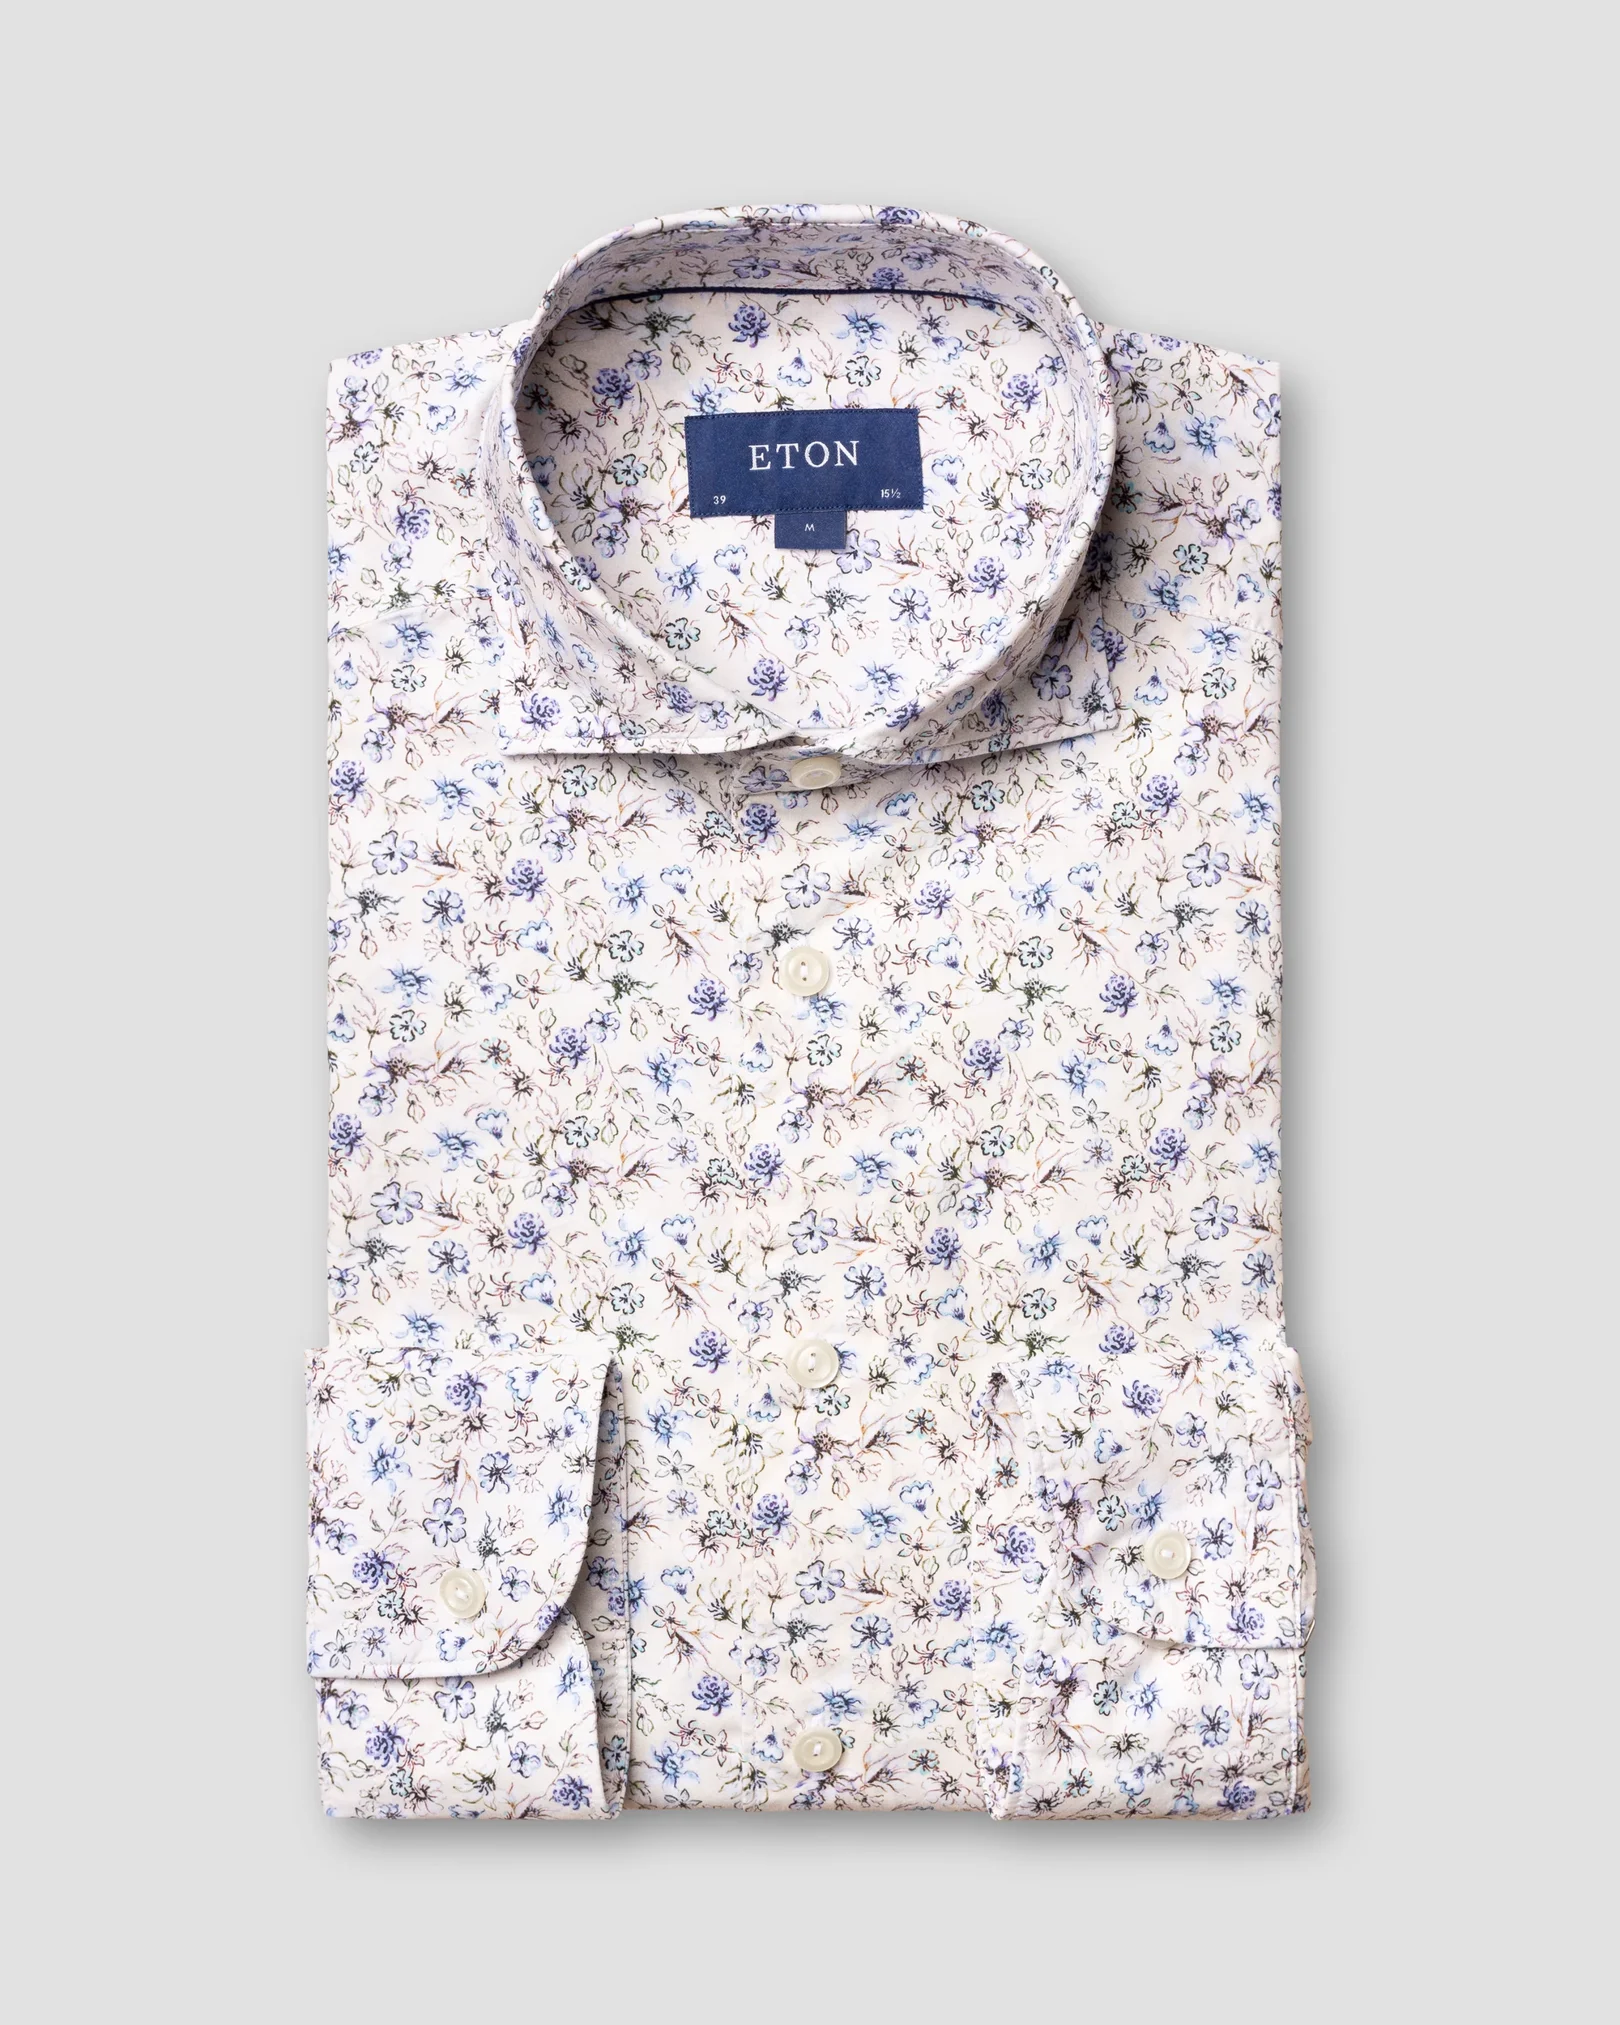 Eton - blue flourishing shirt soft